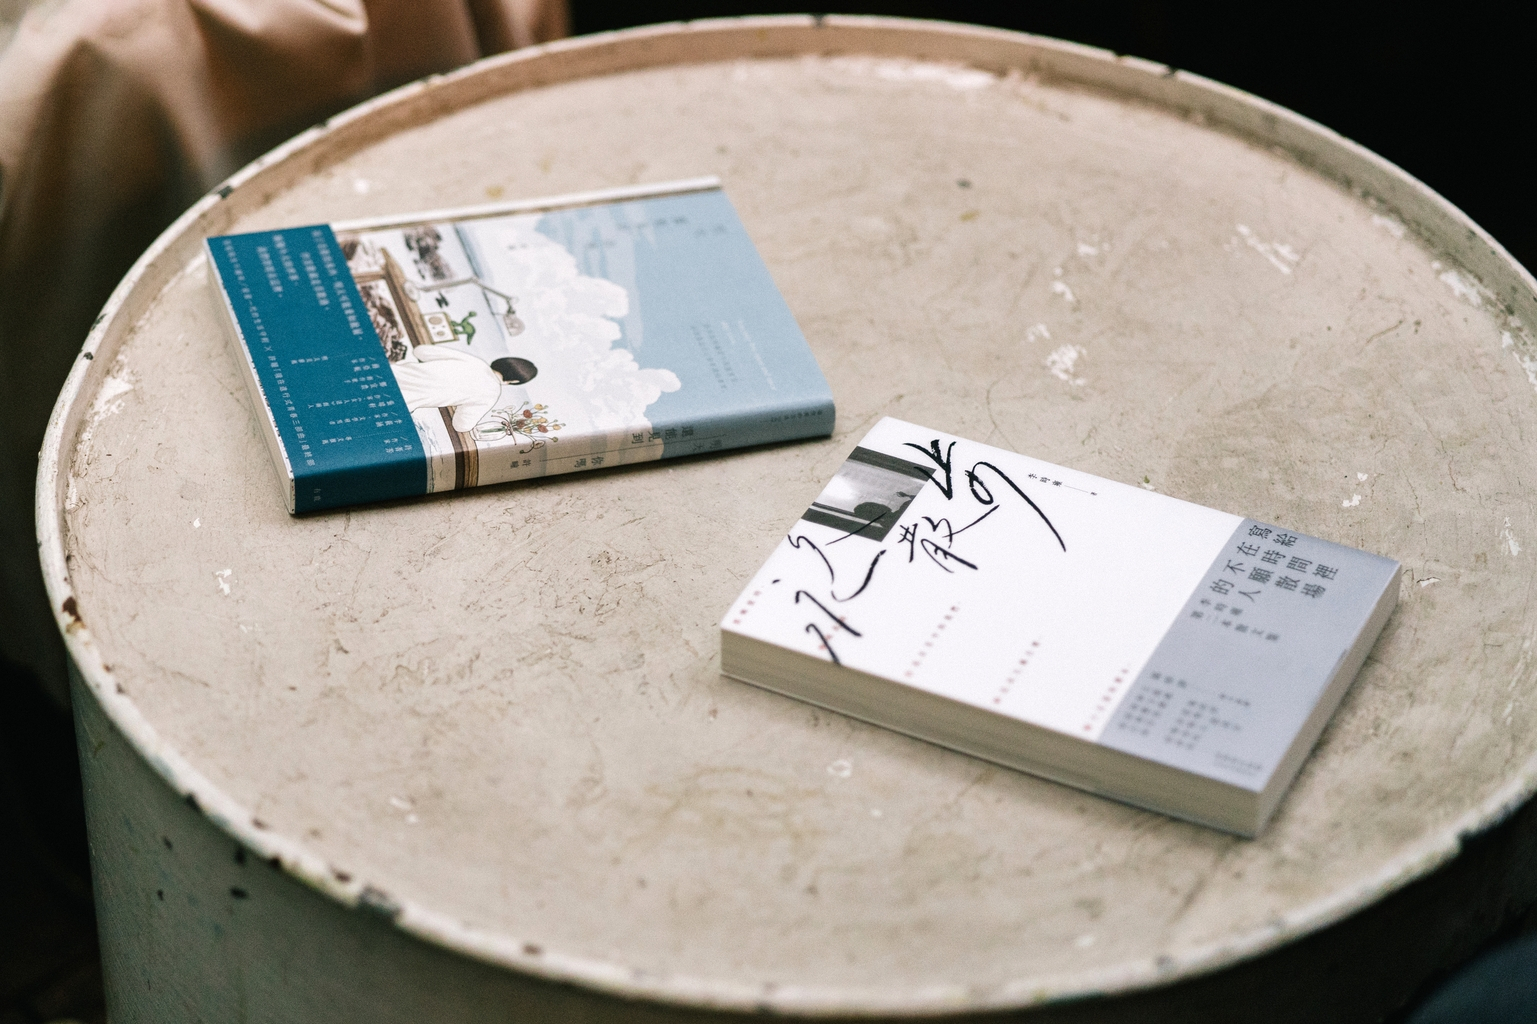 李時雍第二本散文集《永久散步》、許瞳「現在進行式青春三部曲」最終部《明天還能見到你嗎》書影。